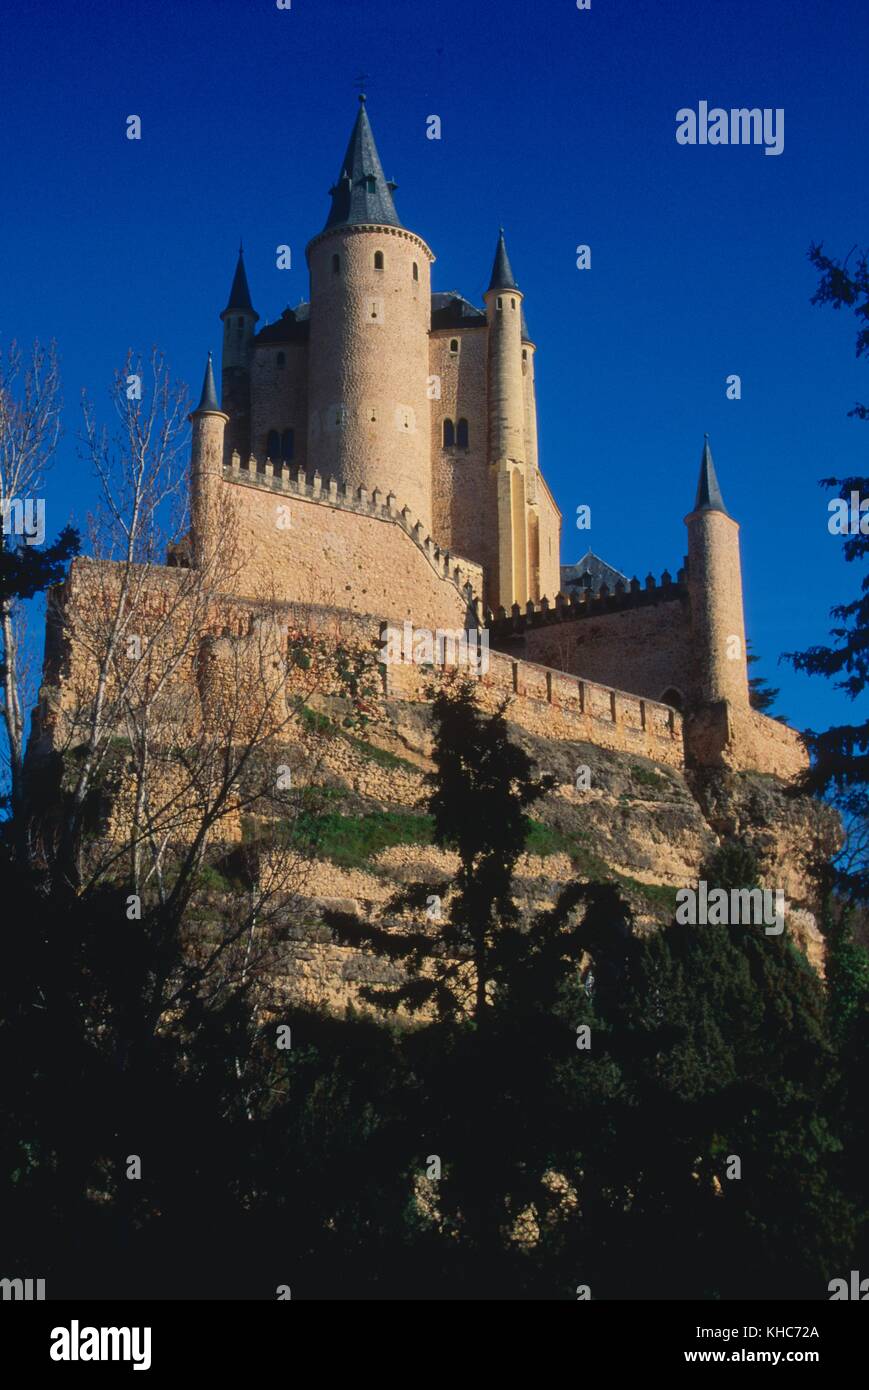 Alcazar, Segovia, city, Province of Segovia, Spain *** Local Caption ***  Alcazar, Segovia, city, Province of Segovia, Spain Stock Photo - Alamy